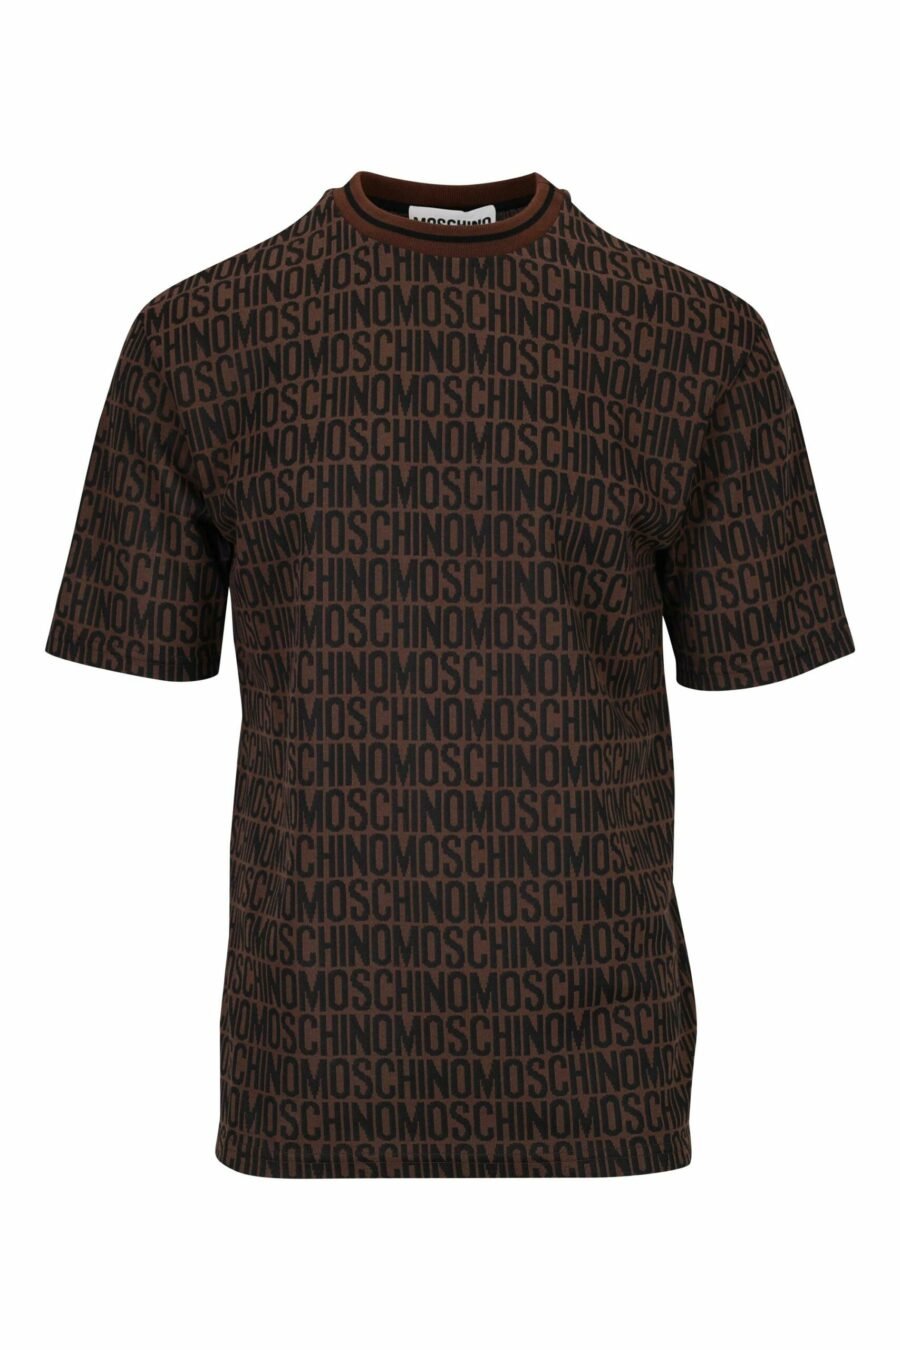 Braunes T-Shirt mit klassischem "all over logo" - 667113465227 skaliert